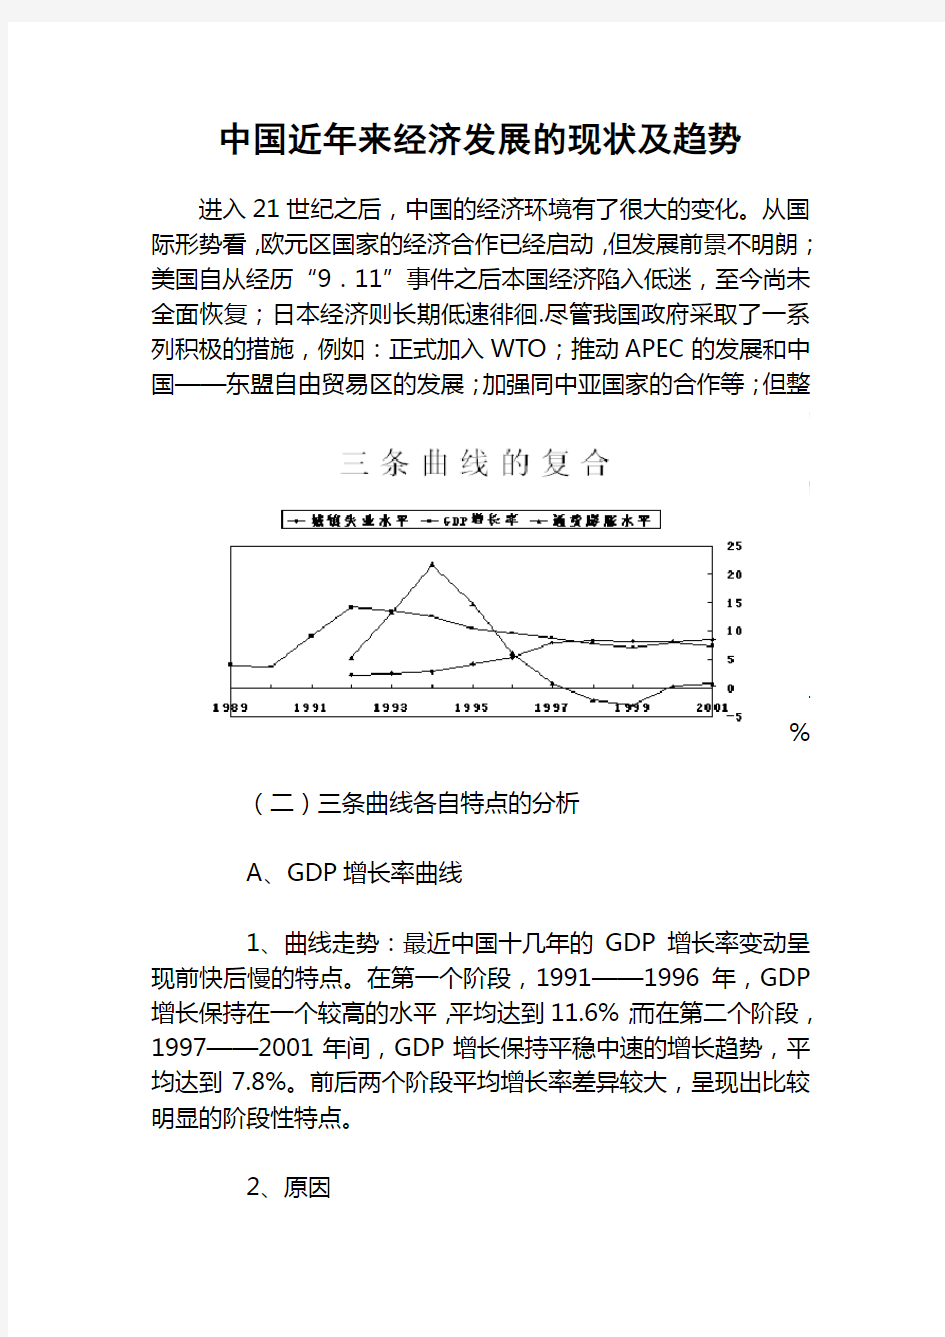 中国近年来经济发展的现状趋势